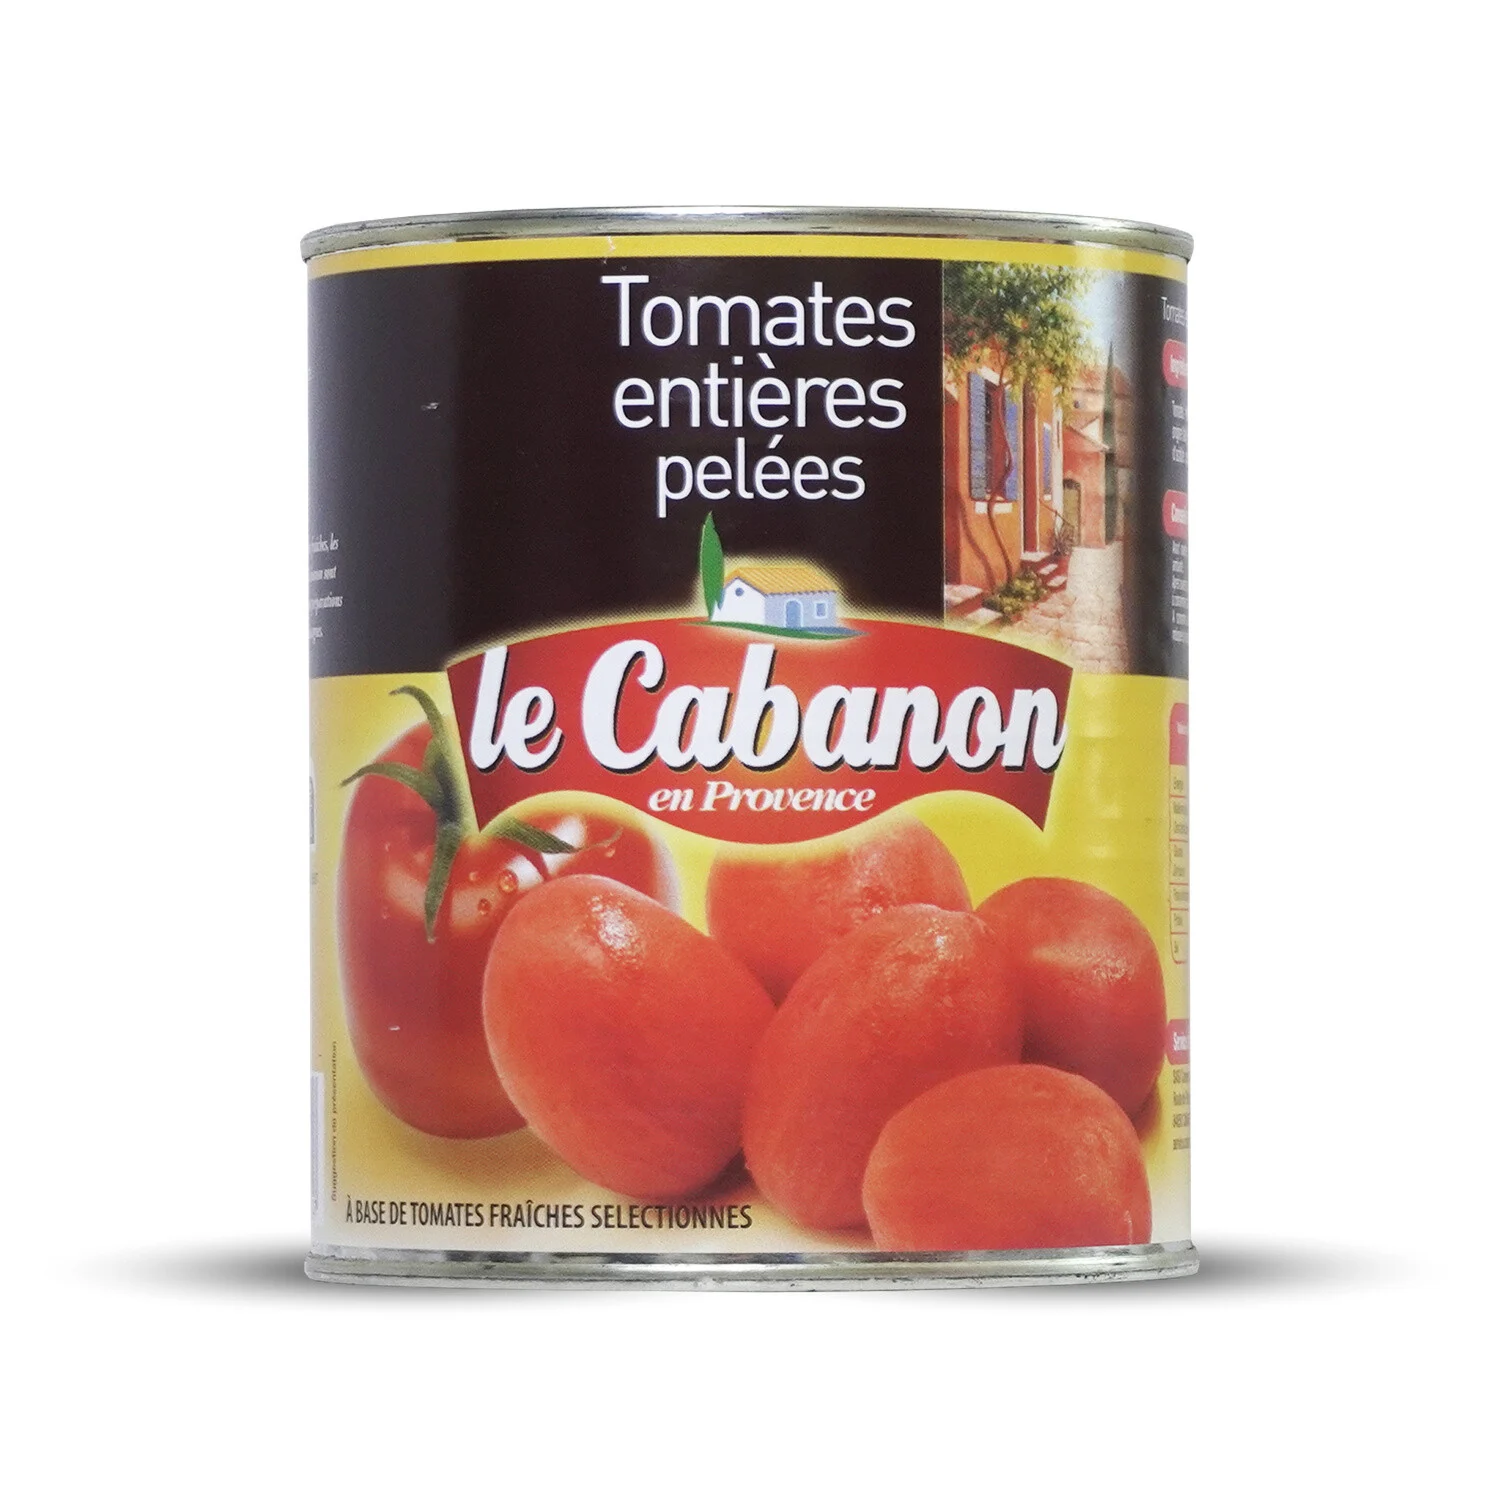 4 4 Tomatenschale von Cabanon